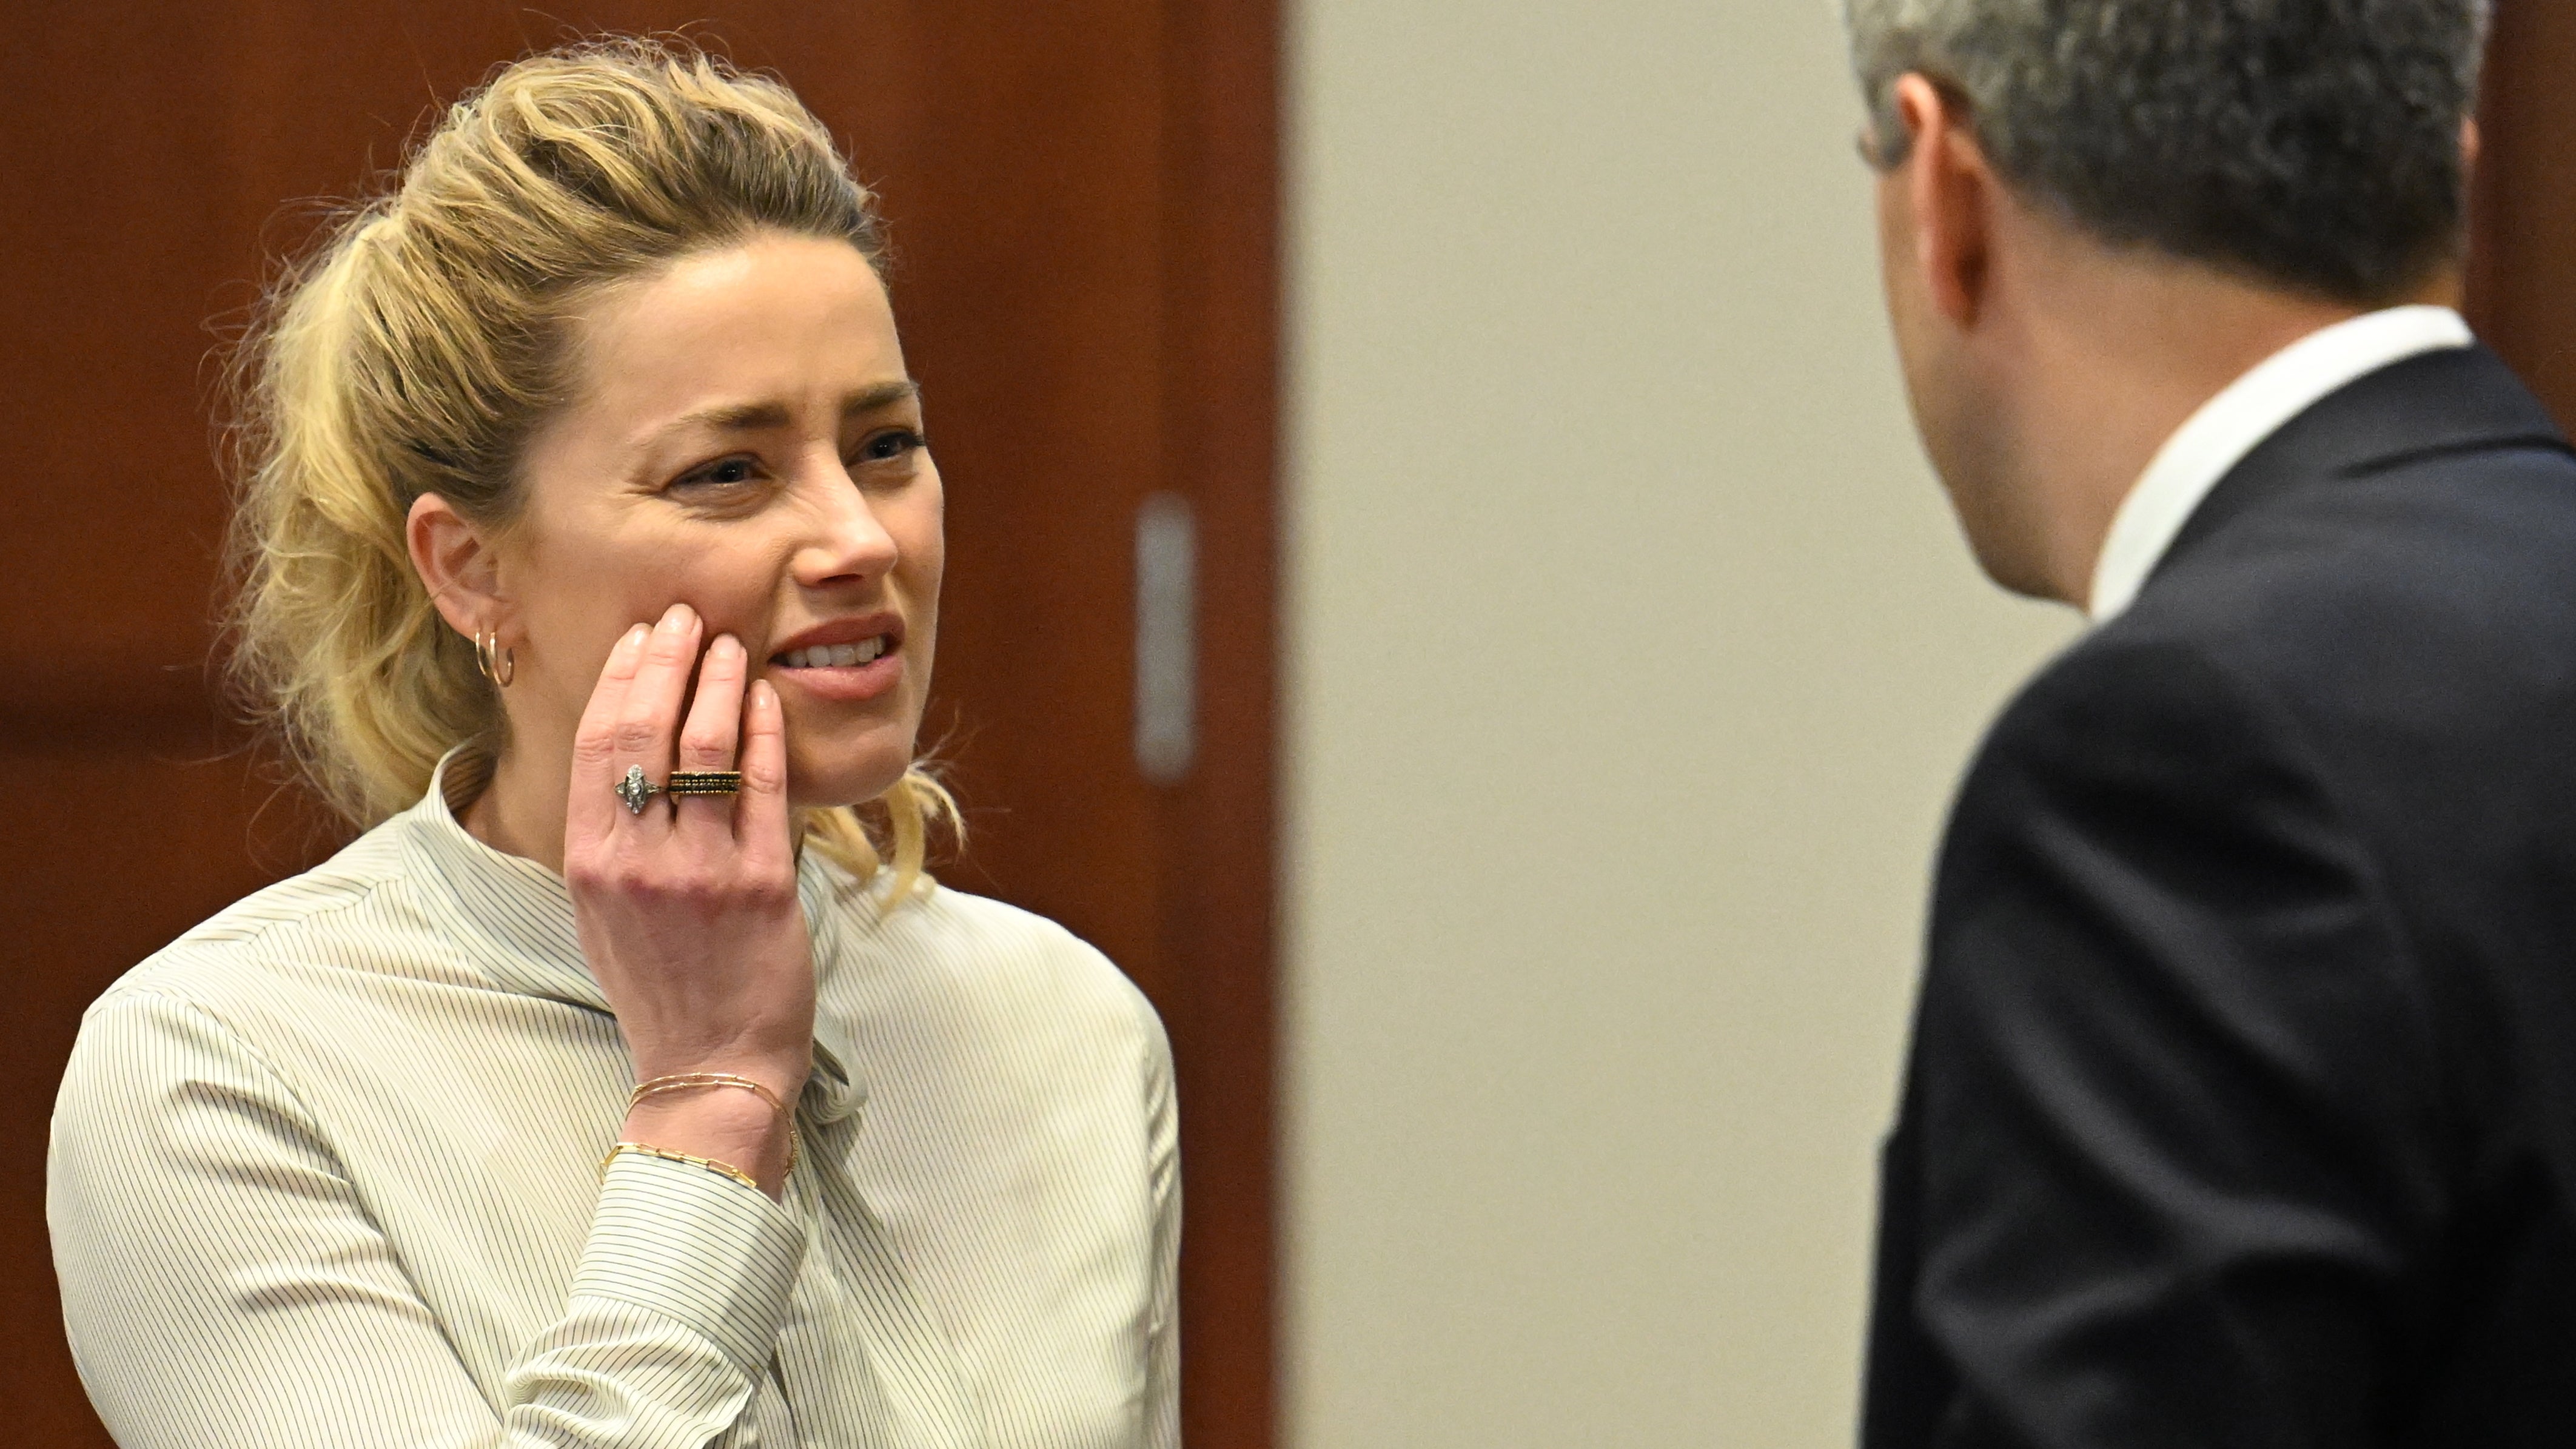 La actriz estadounidense Amber Heard durante el juicio en la Corte de Circuito del condado de Fairfax en Fairfax, Virginia, EE.UU., el 19 de abril de 2022